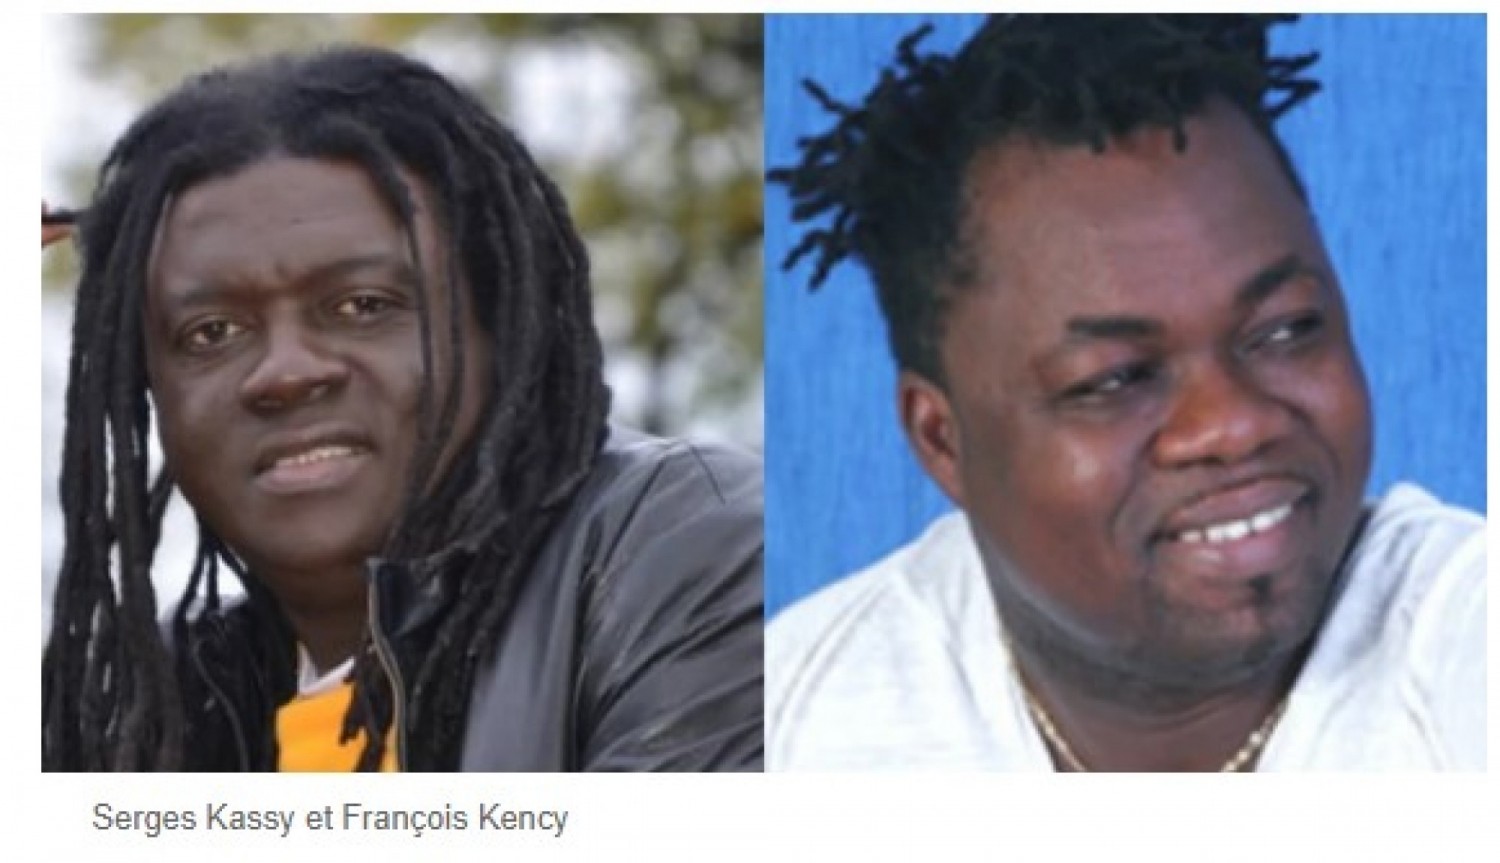 Côte d'Ivoire : De retour au pays après 12 ans d'exil, la cérémonie d'accueil de Serges Kassy et François Kency a été ajournée, les raisons